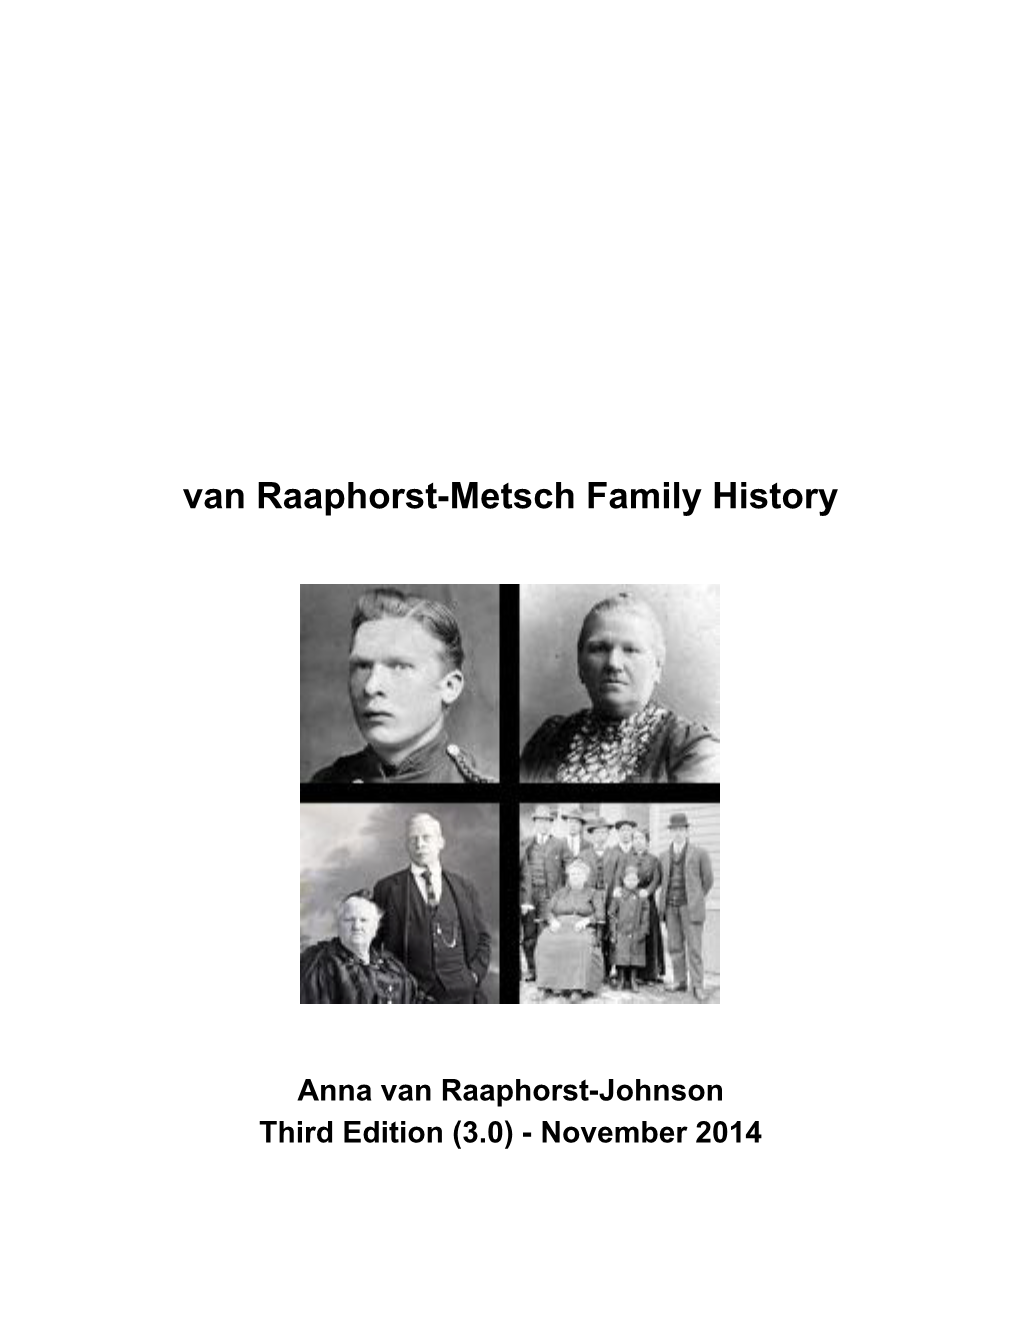 Van Raaphorst-Metsch Family History